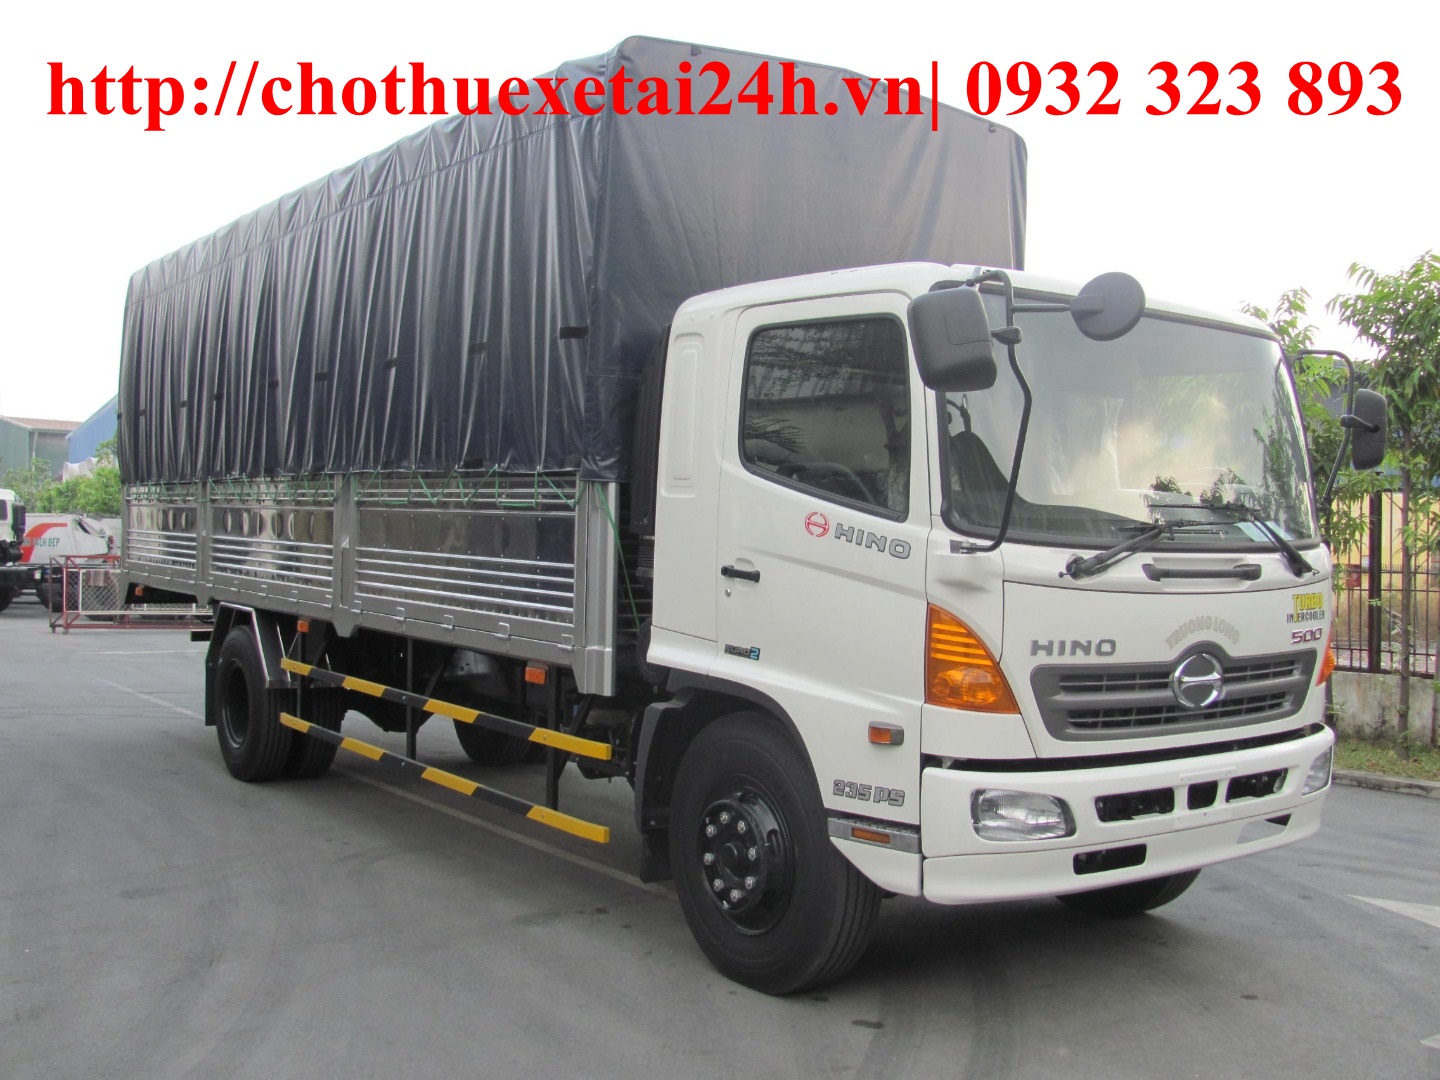 Cần thuê xe tải chở hàng, chuyển nhà tại địa bàn Hà Nội